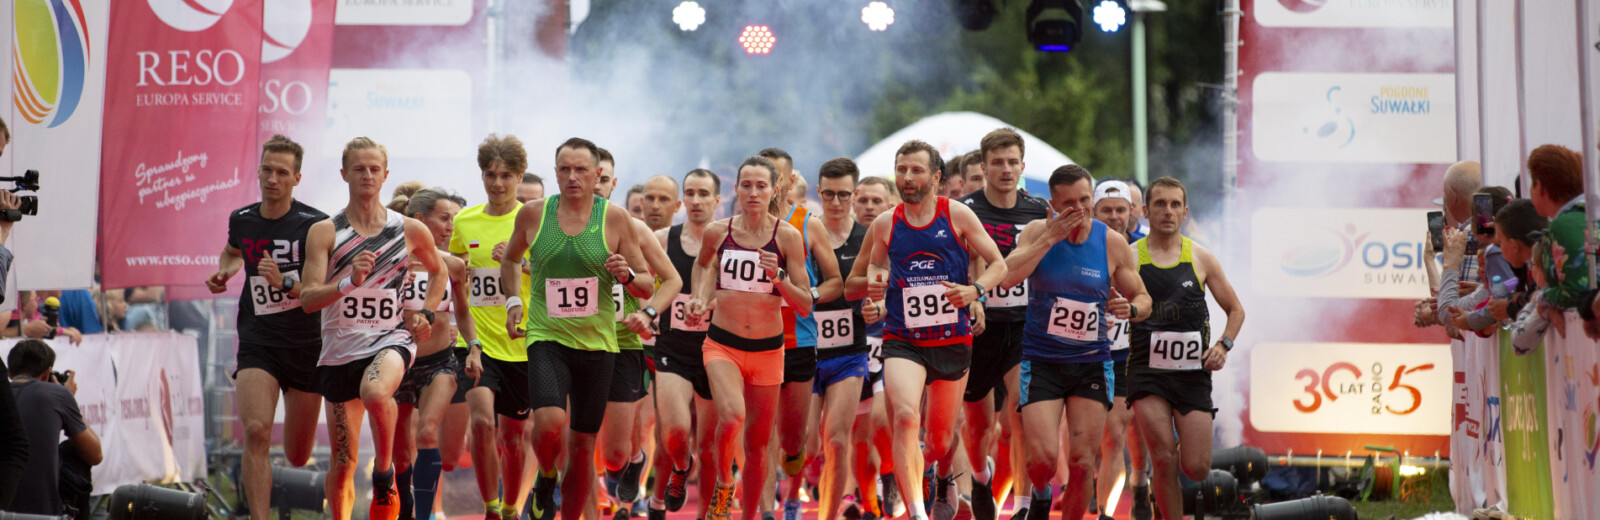 RESO Suwałki Półmaraton - start zawodników na czerwonym dywanie na 5 km